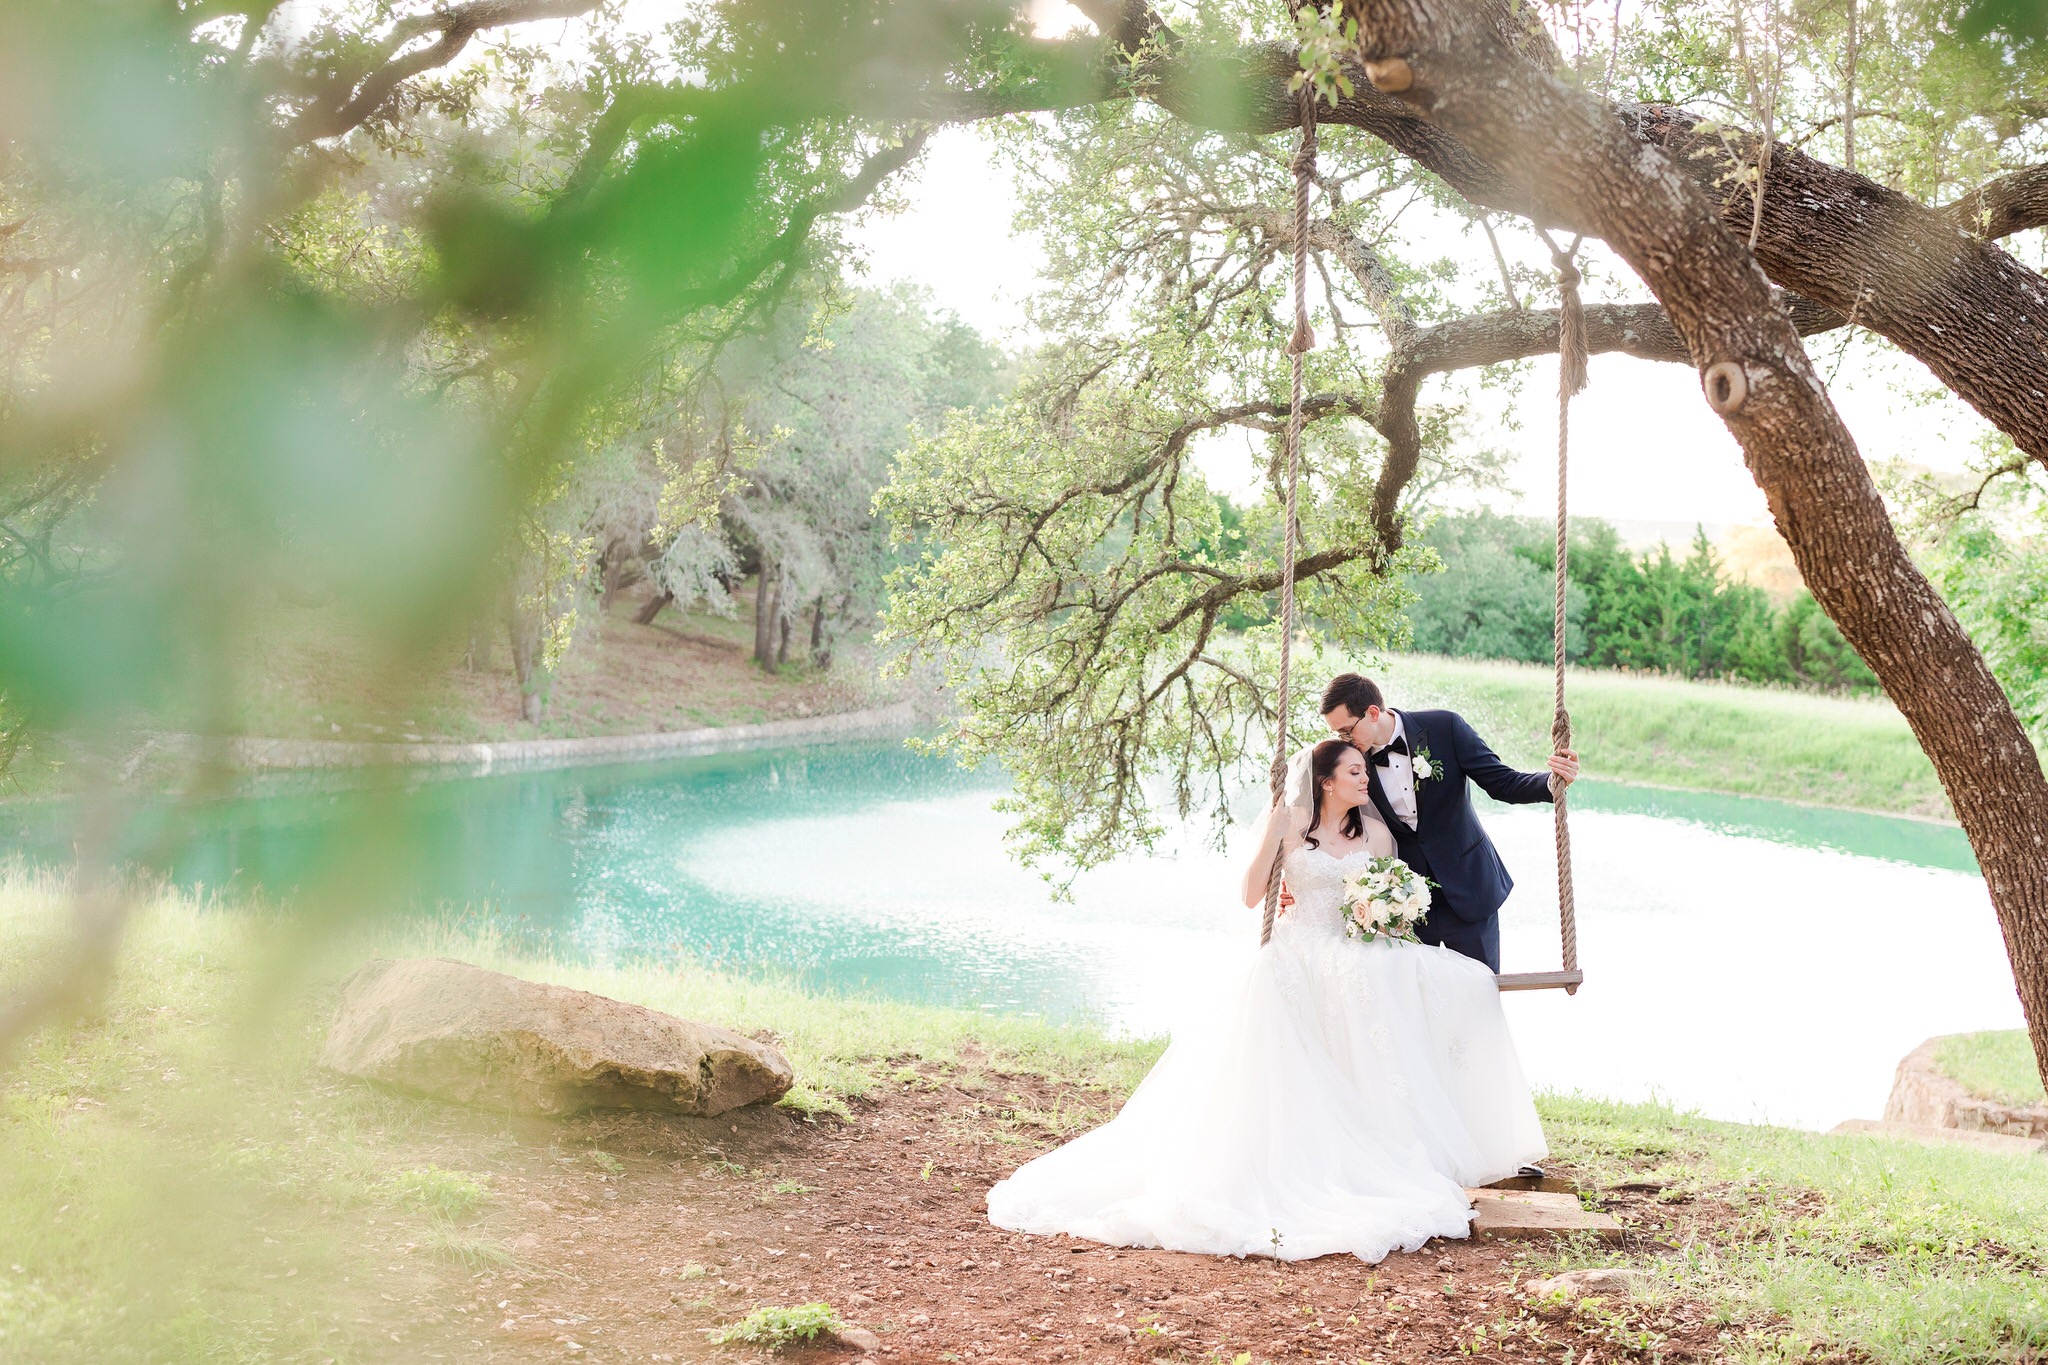 A Dusty Blue and Gold Wedding at Kendall Point in Boerne, TX by Dawn Elizabeth Studios, San Antonio Wedding Photographer